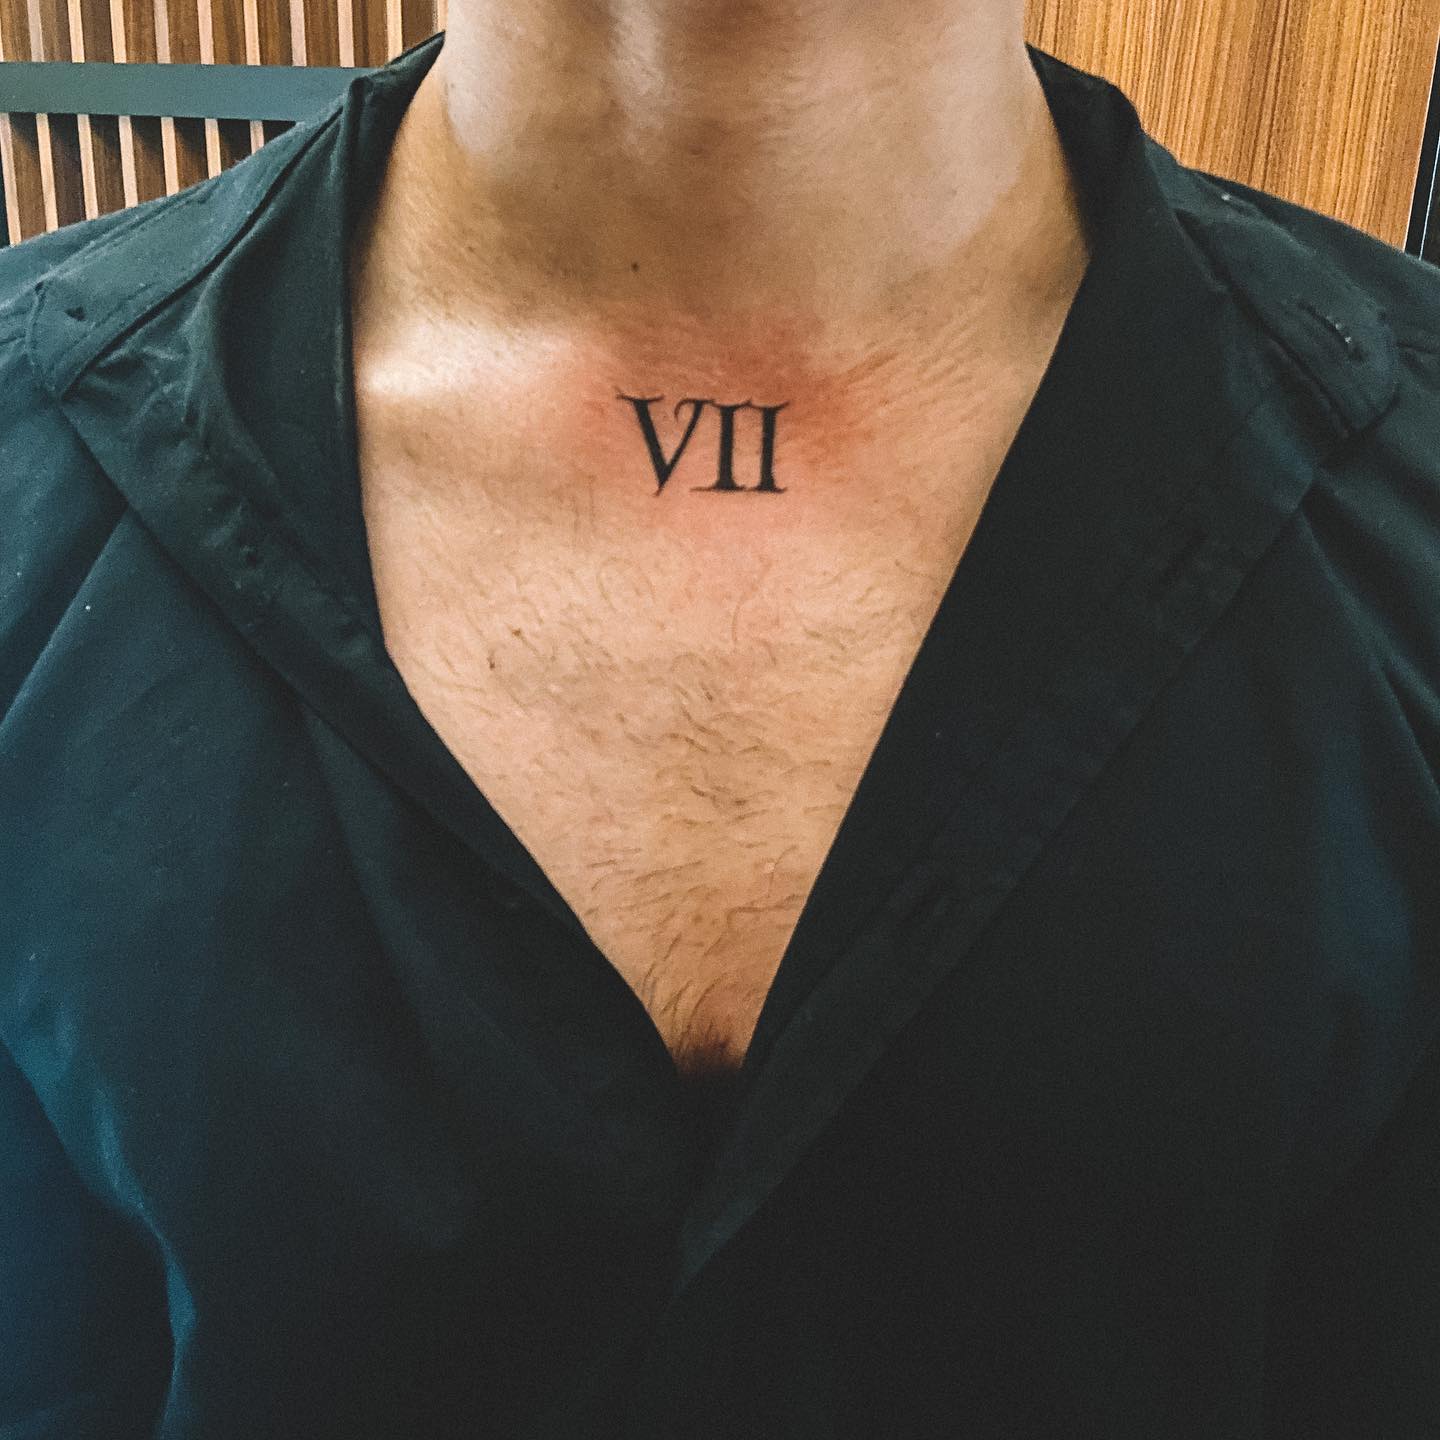 Tatuaje de números romanos en el pecho.